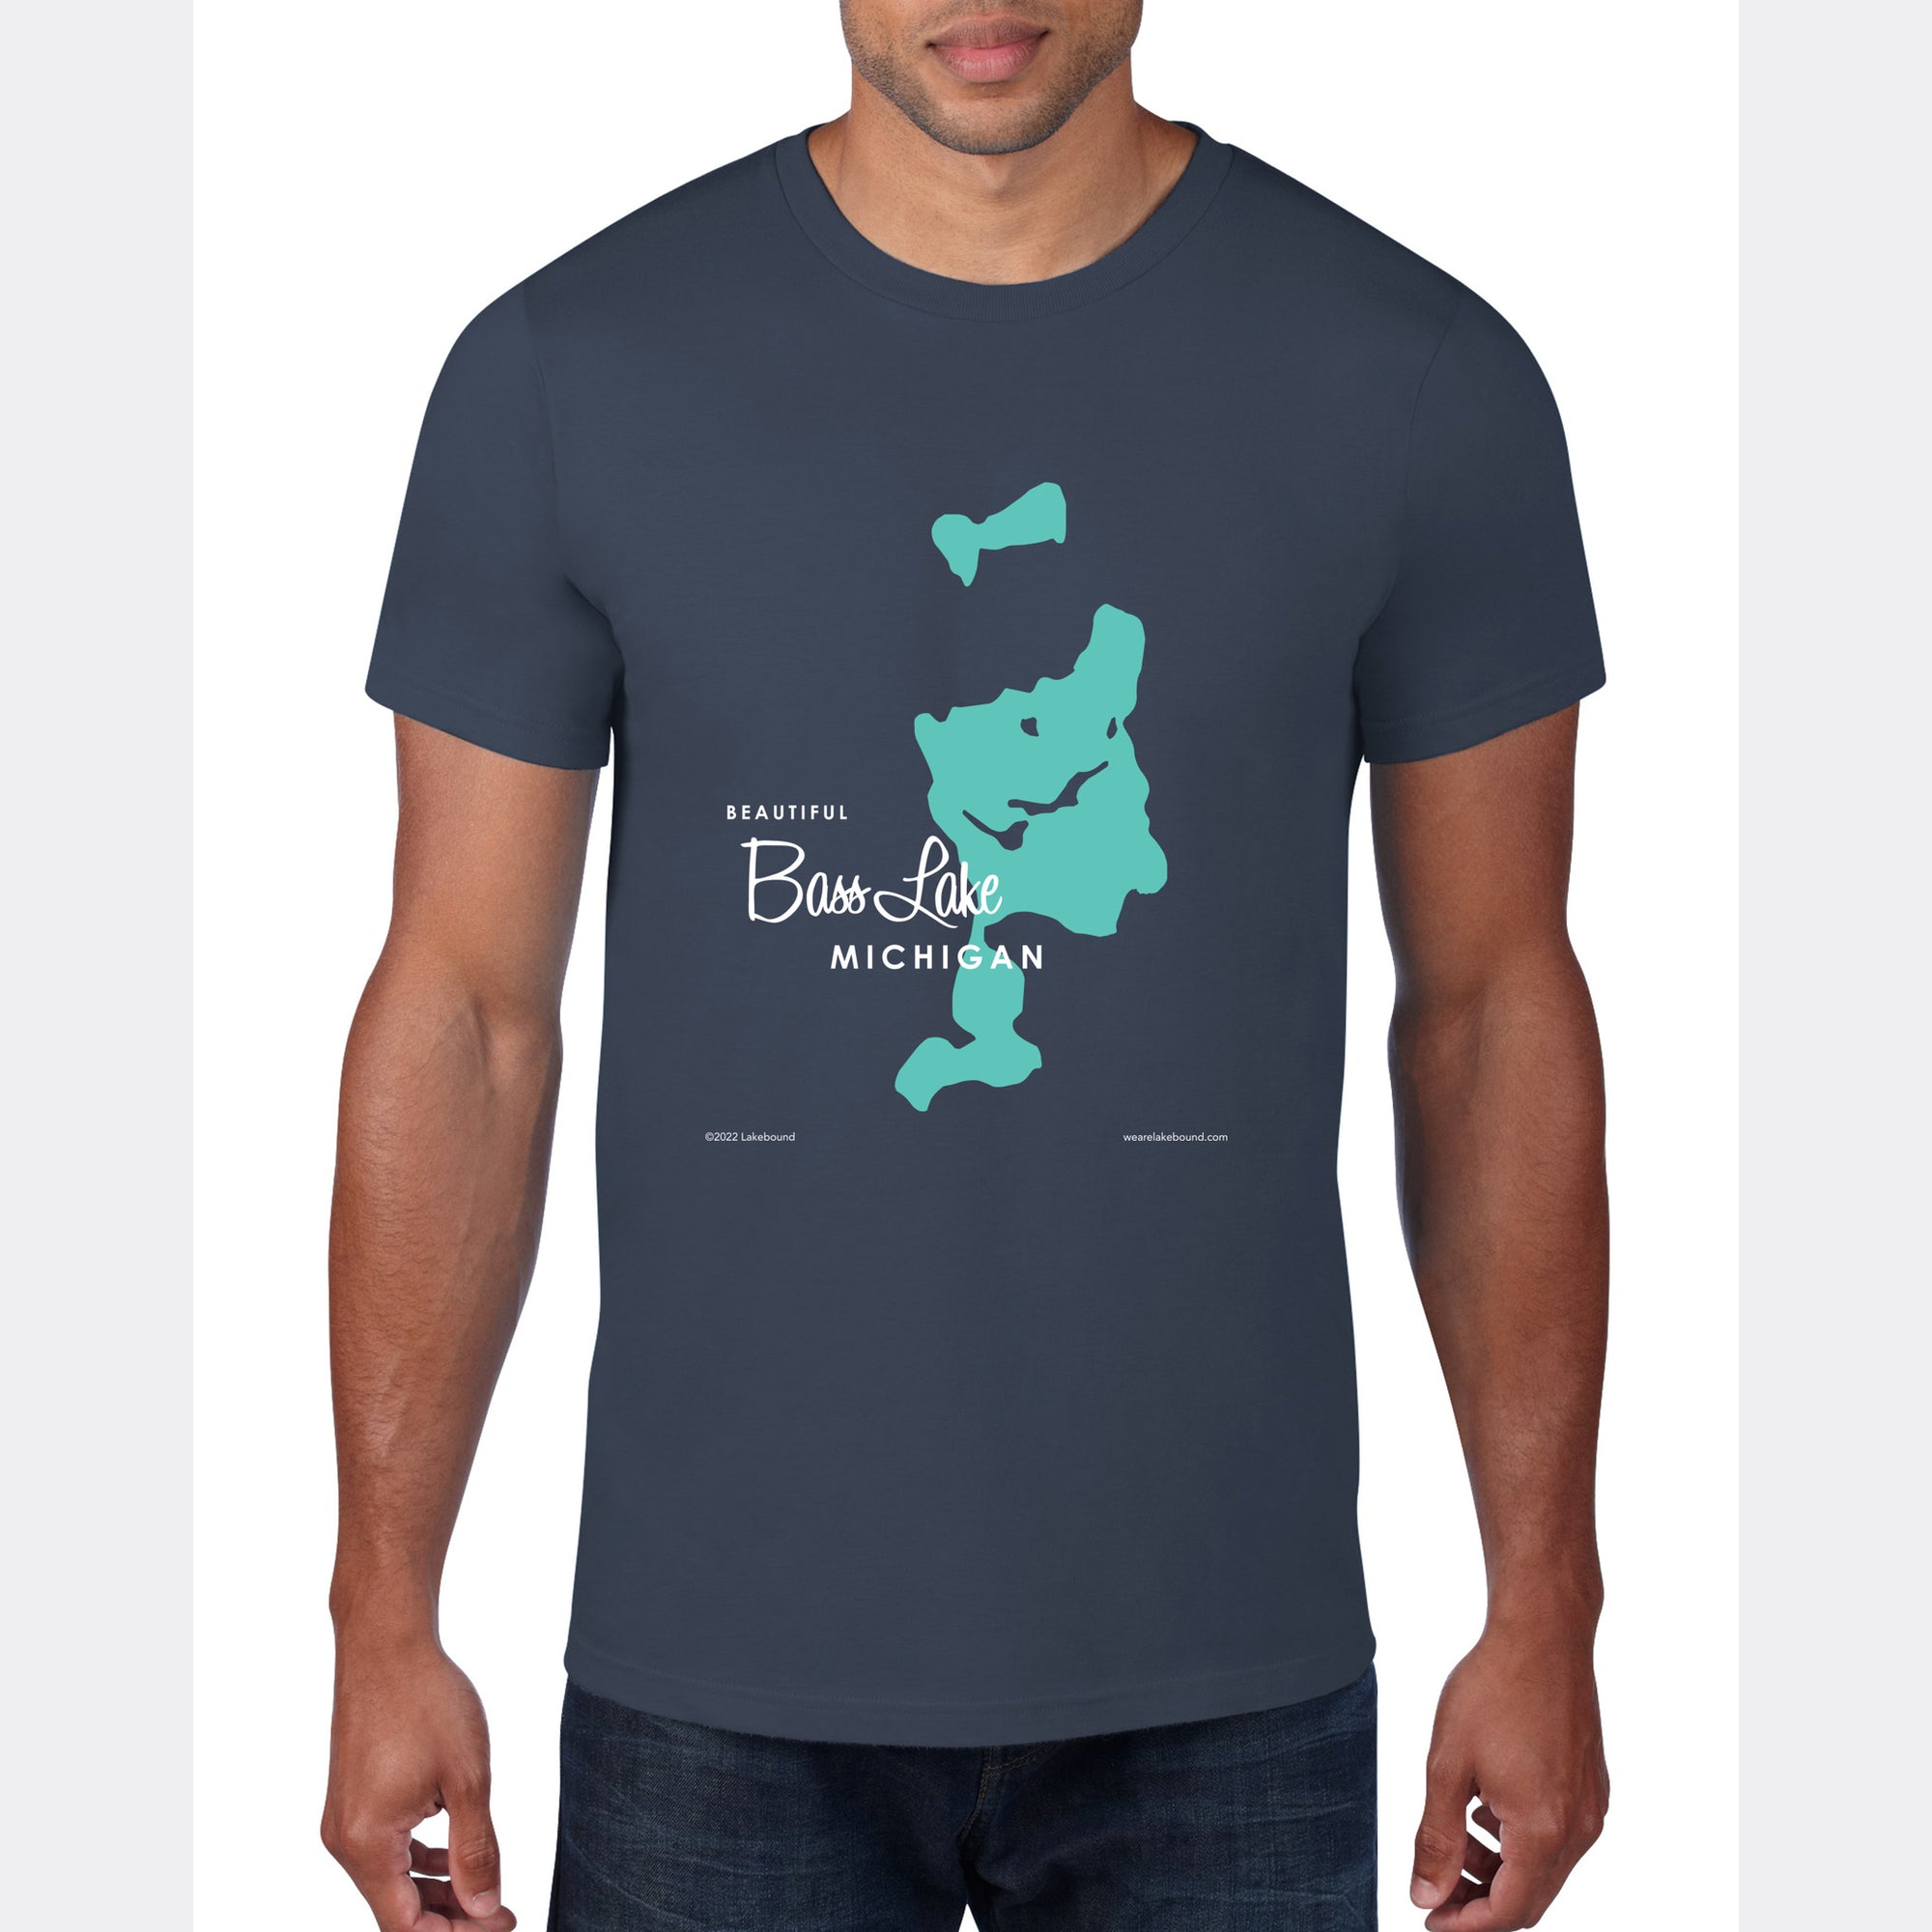 Bass Lake Michigan, T-Shirt